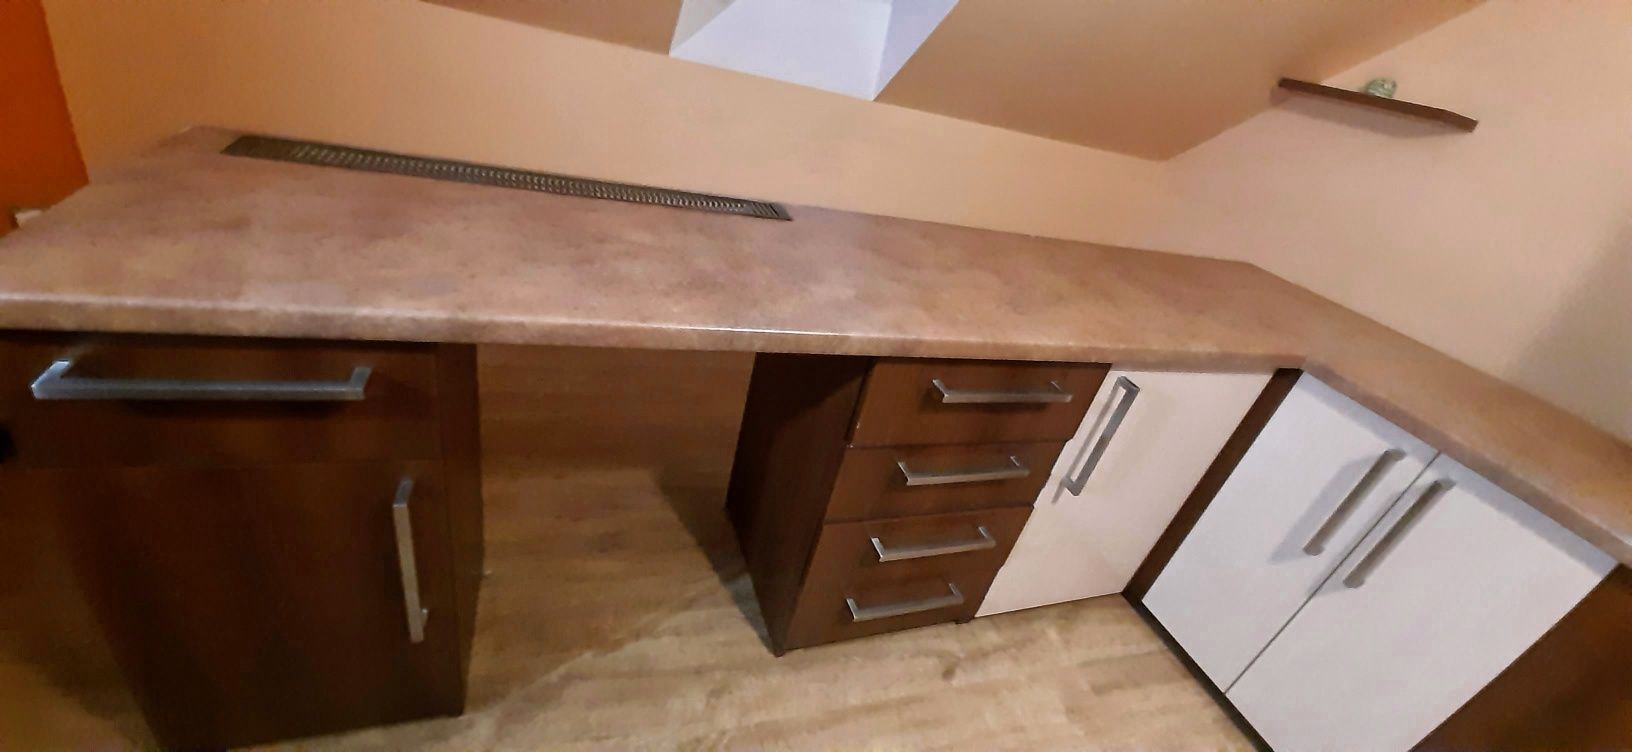 Duże biurko wytrzymałe i zadbane